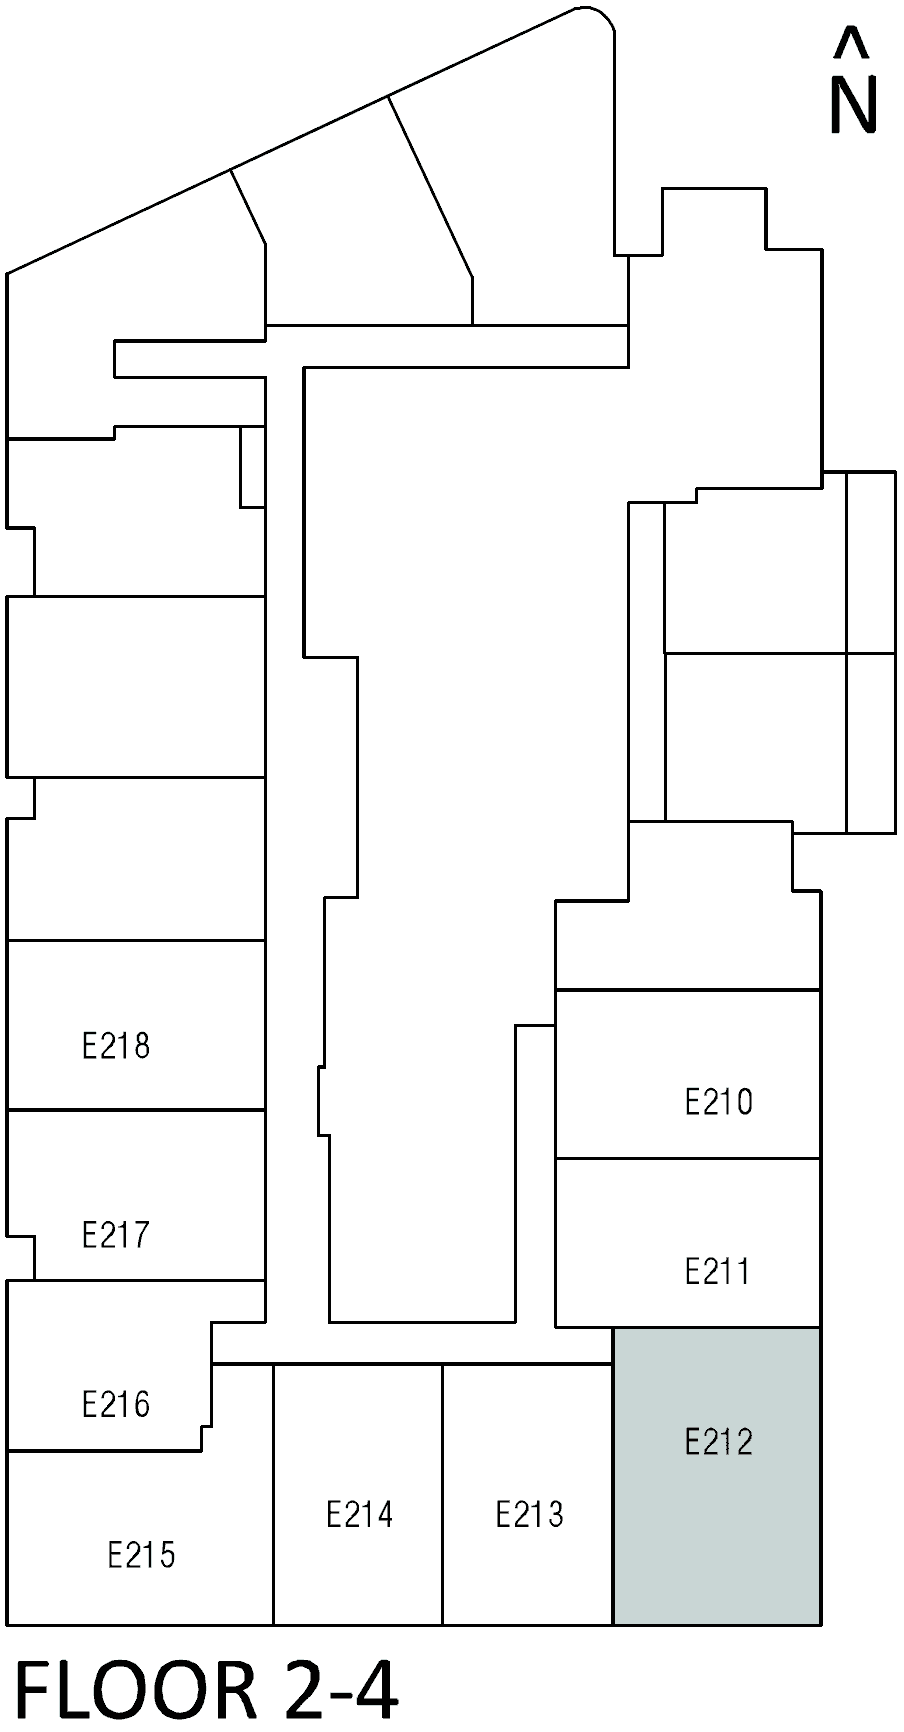 E212 floor plan